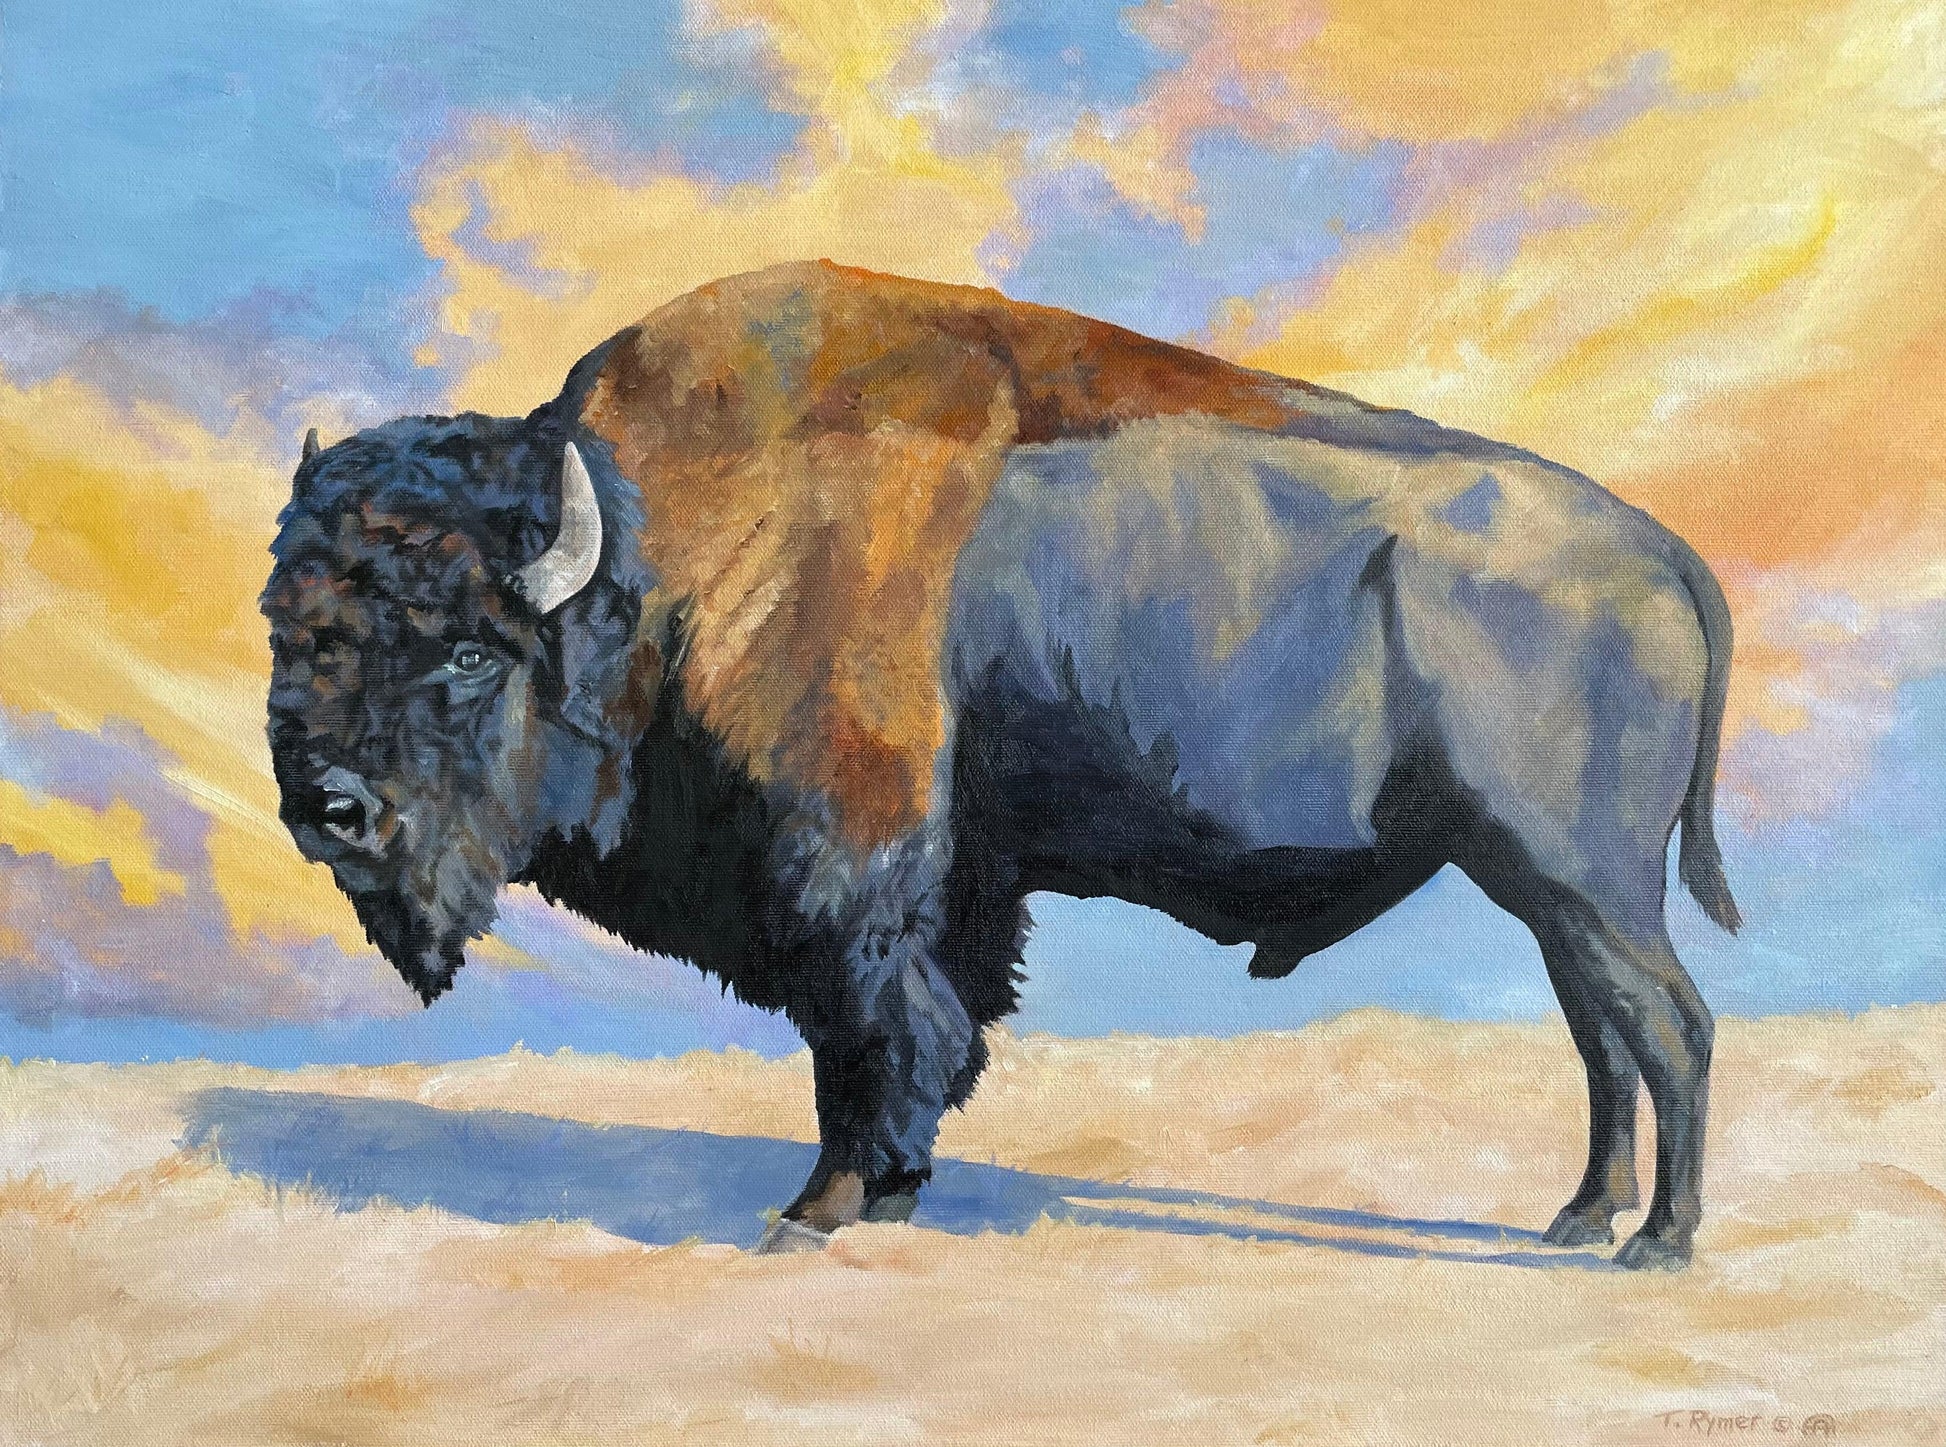 He Stood By Black Mesa-Painting-Tamara Rymer-Sorrel Sky Gallery